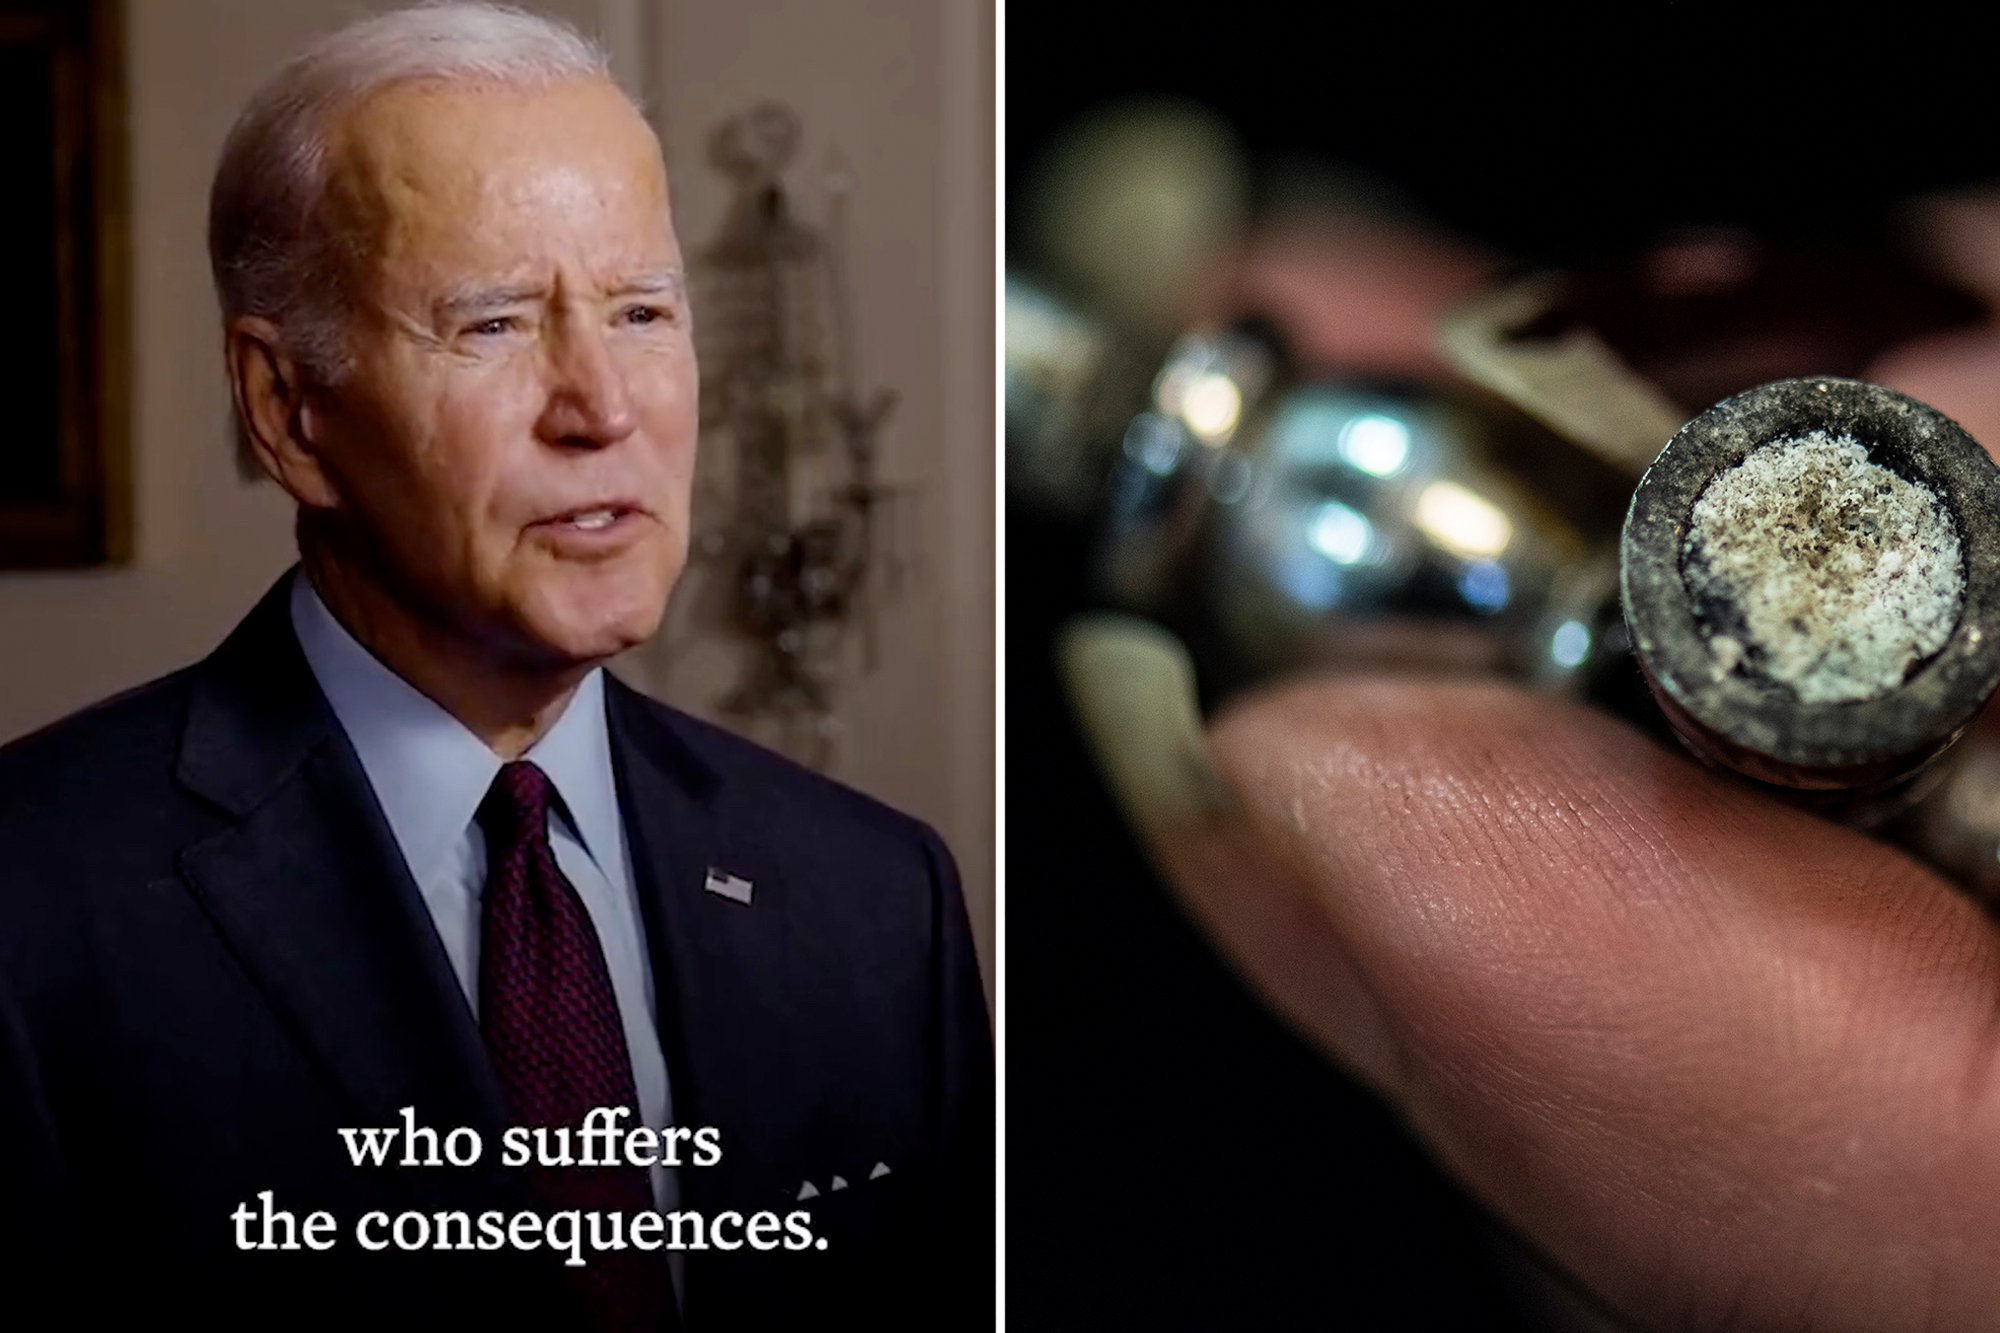 Joe Biden, dressed in a suit and tie